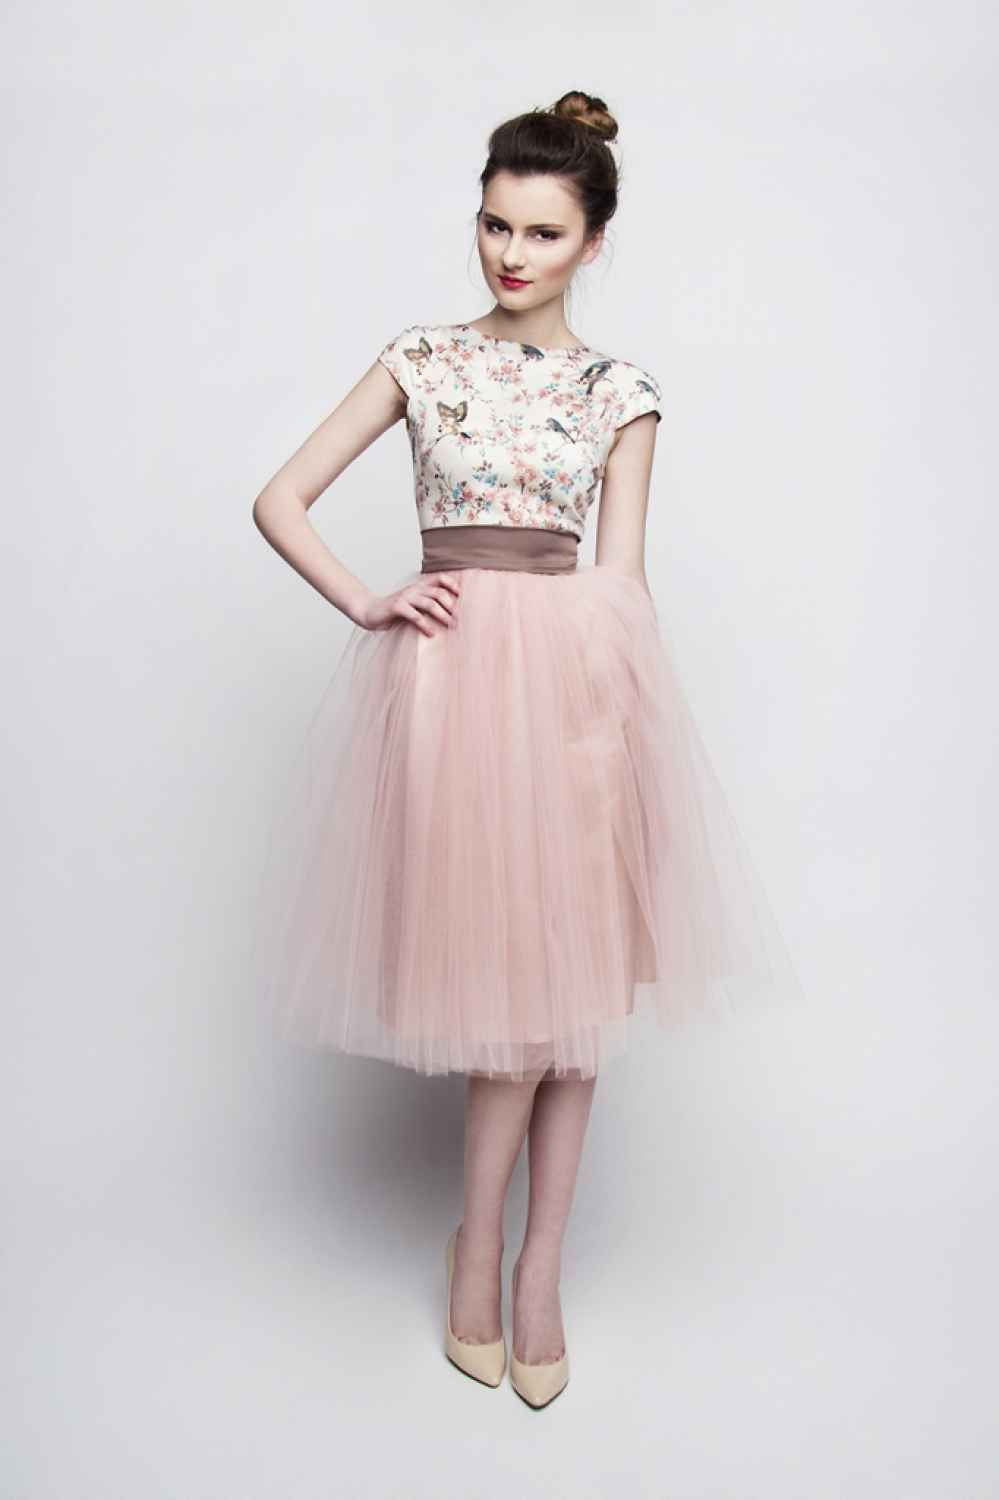 Kleid Vintage Hochzeit
 Standesamt Kleid rosa braun kurz mit Tüllrock individuelle